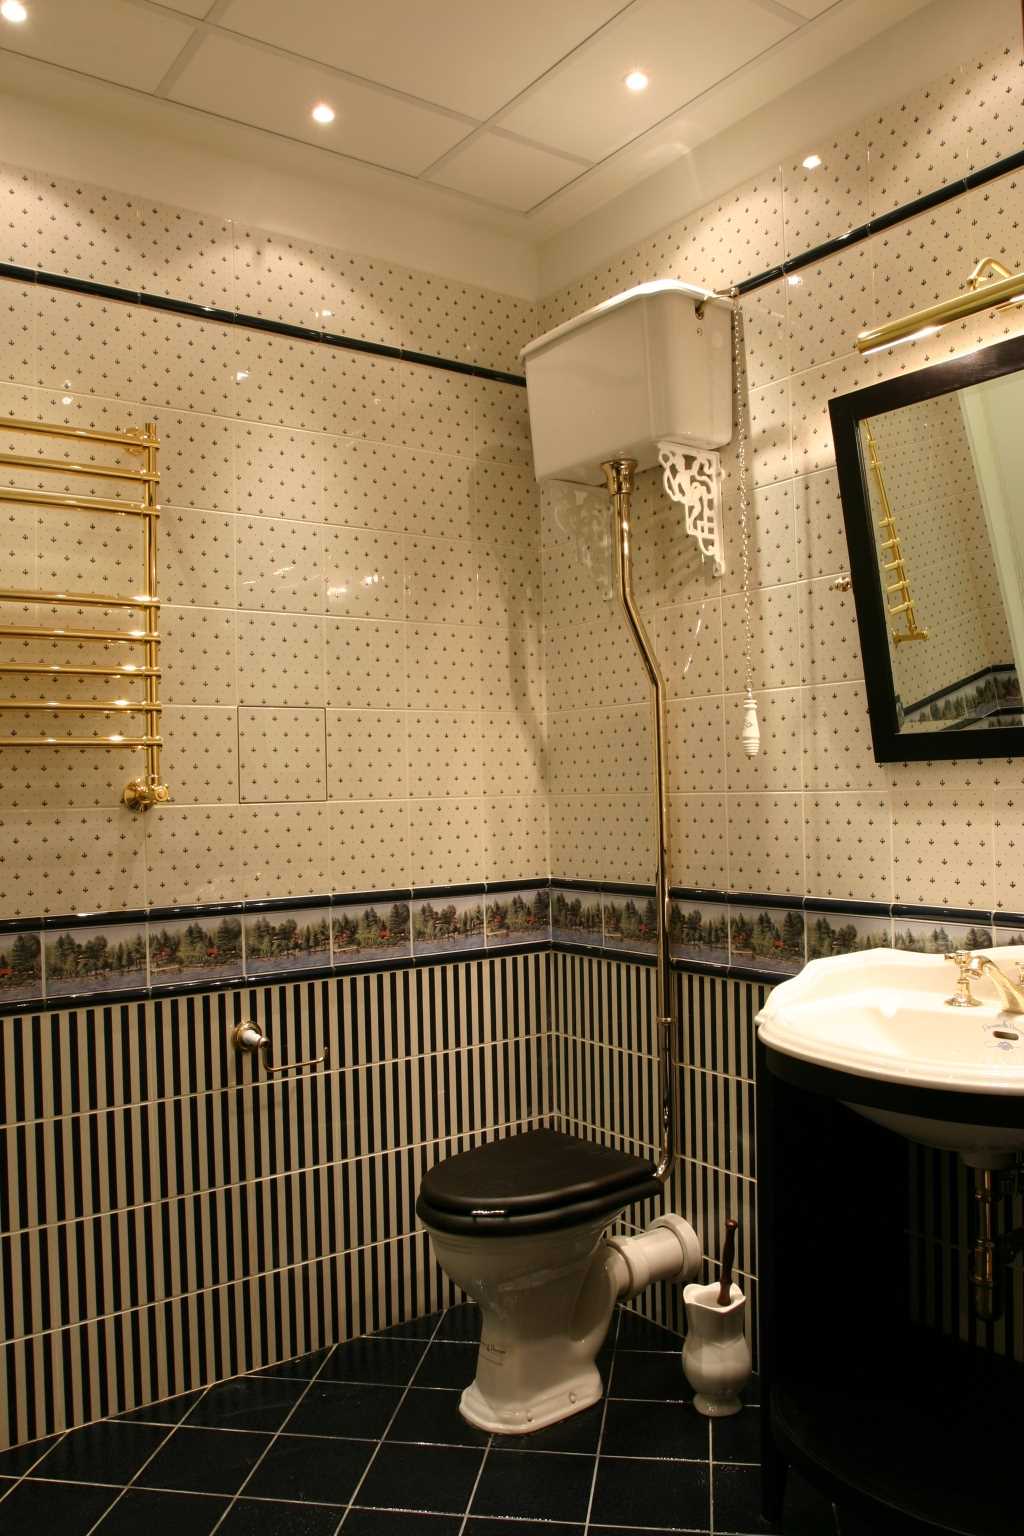 option d'une salle de bain de style léger dans un style classique